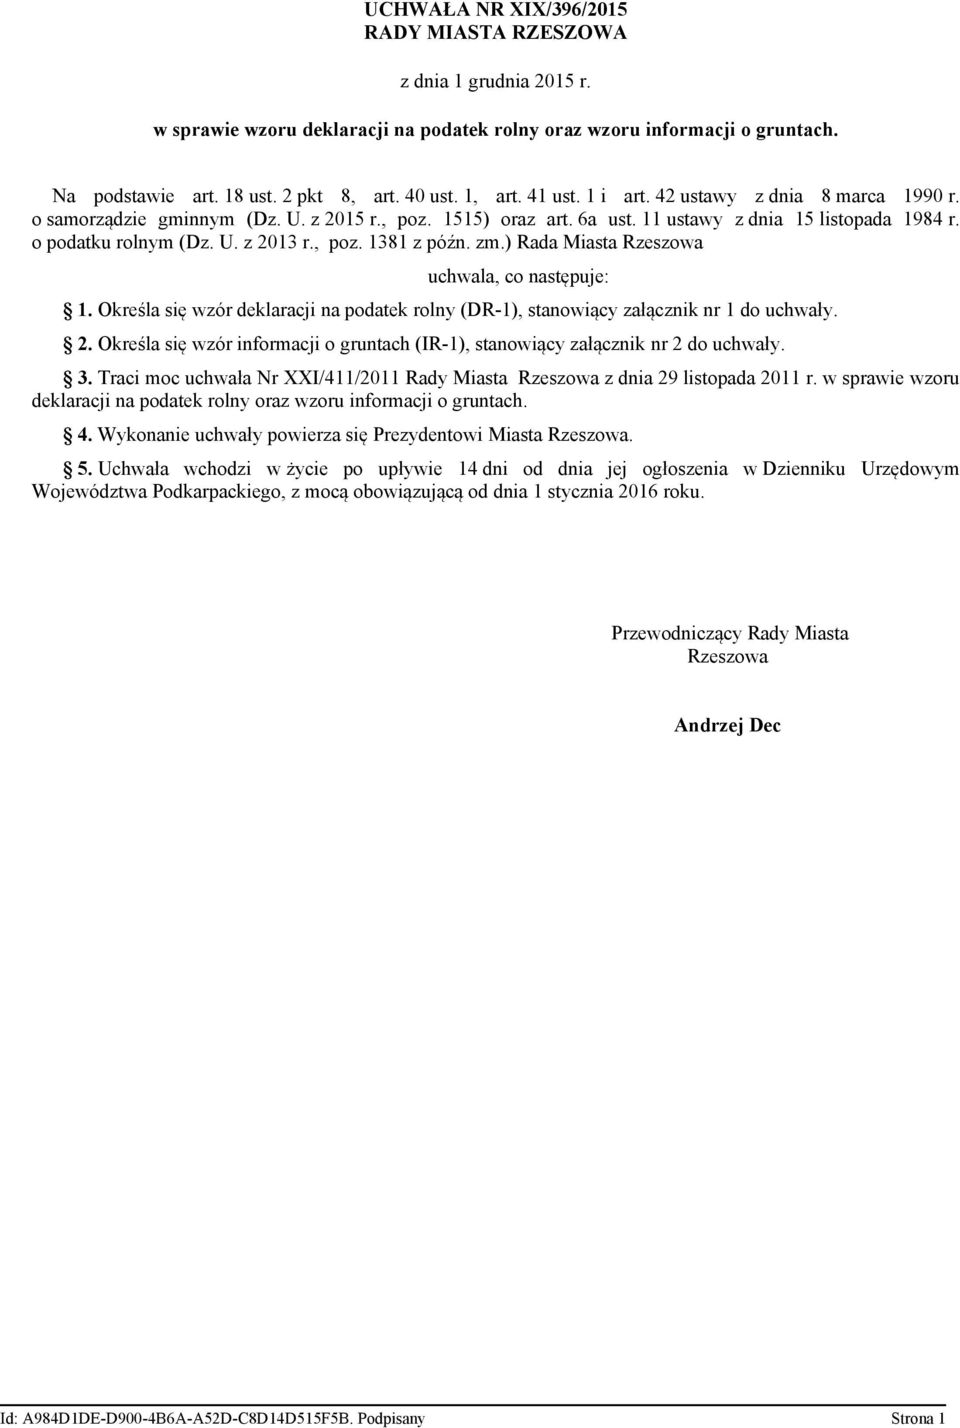 poz. 1381 z późn. zm.) Rada Miasta Rzeszowa uchwala co następuje: 1. Określa się wzór deklaracji na podatek rolny (DR-1) stanowiący załącznik nr 1 do uchwały. 2.